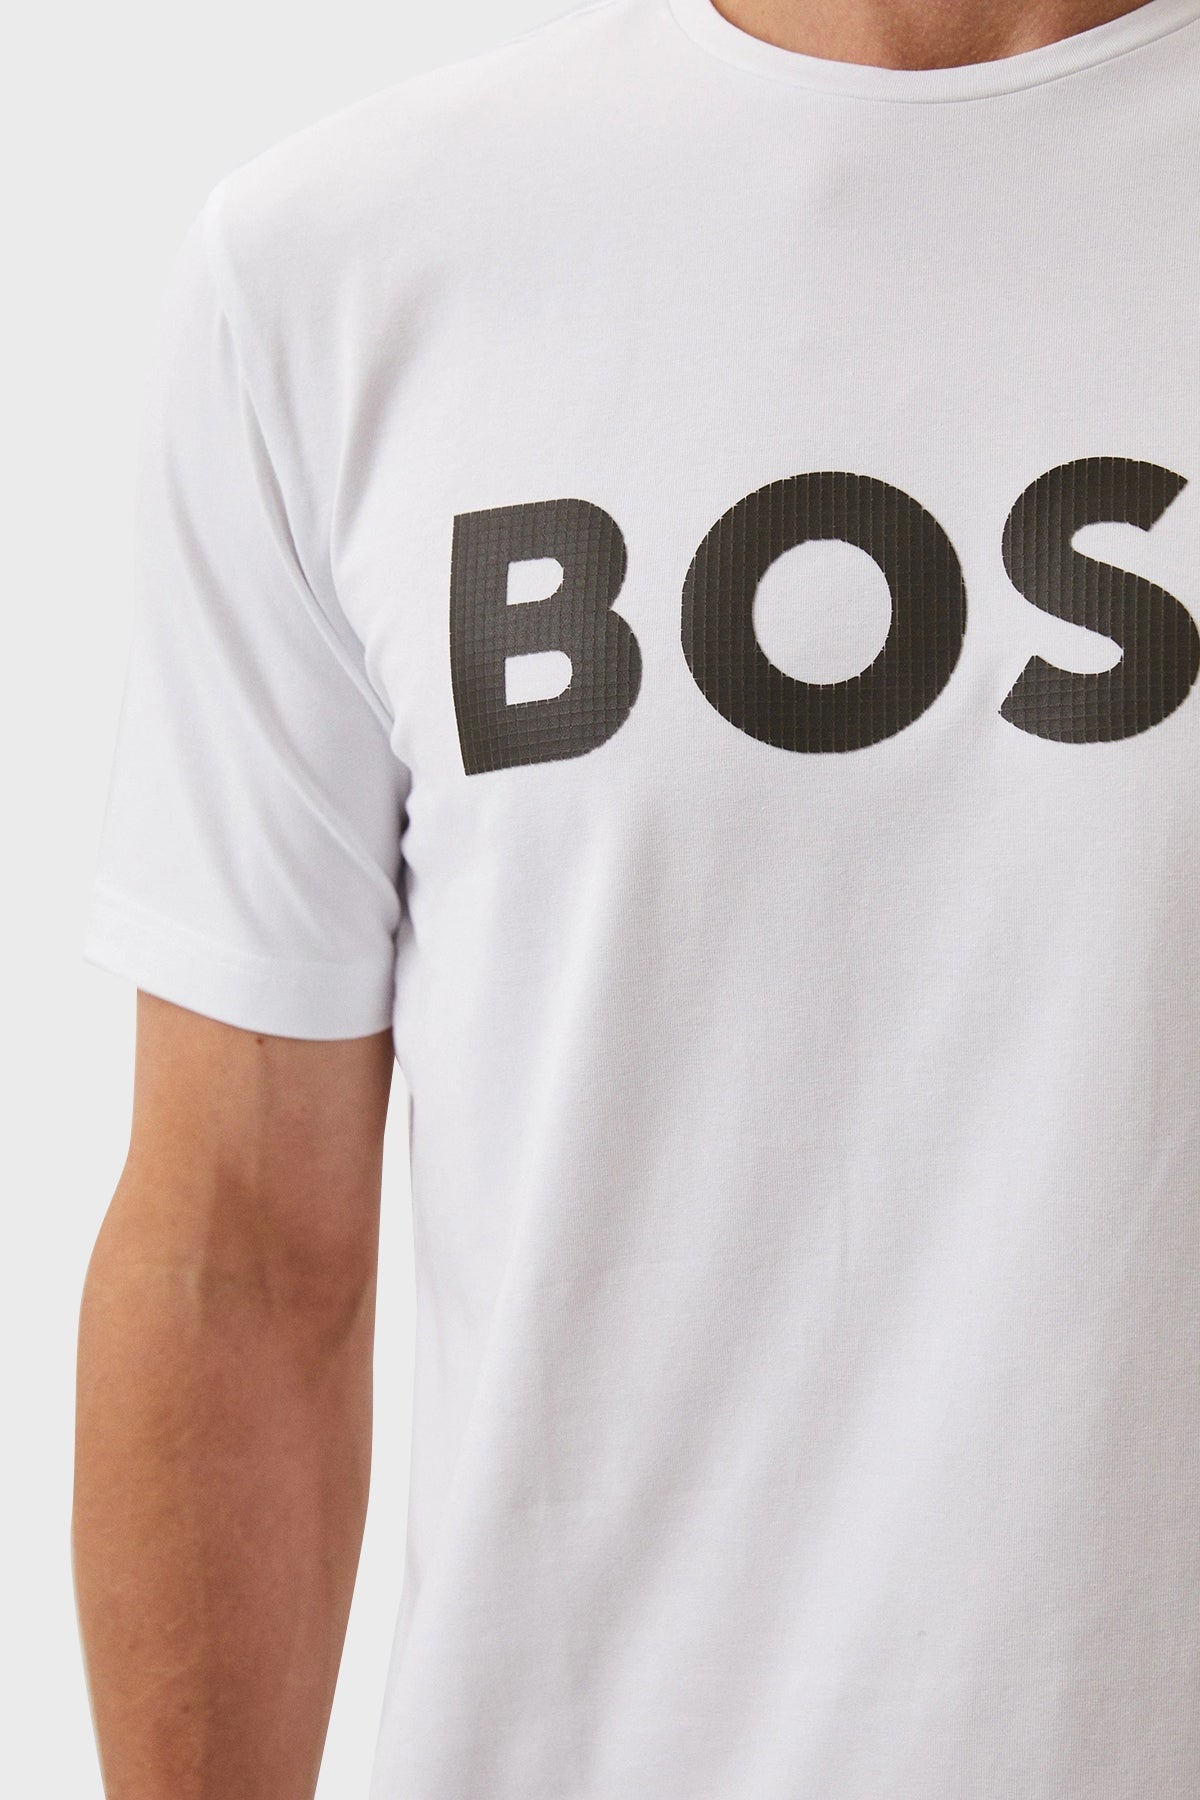 Camiseta Boss Regular White